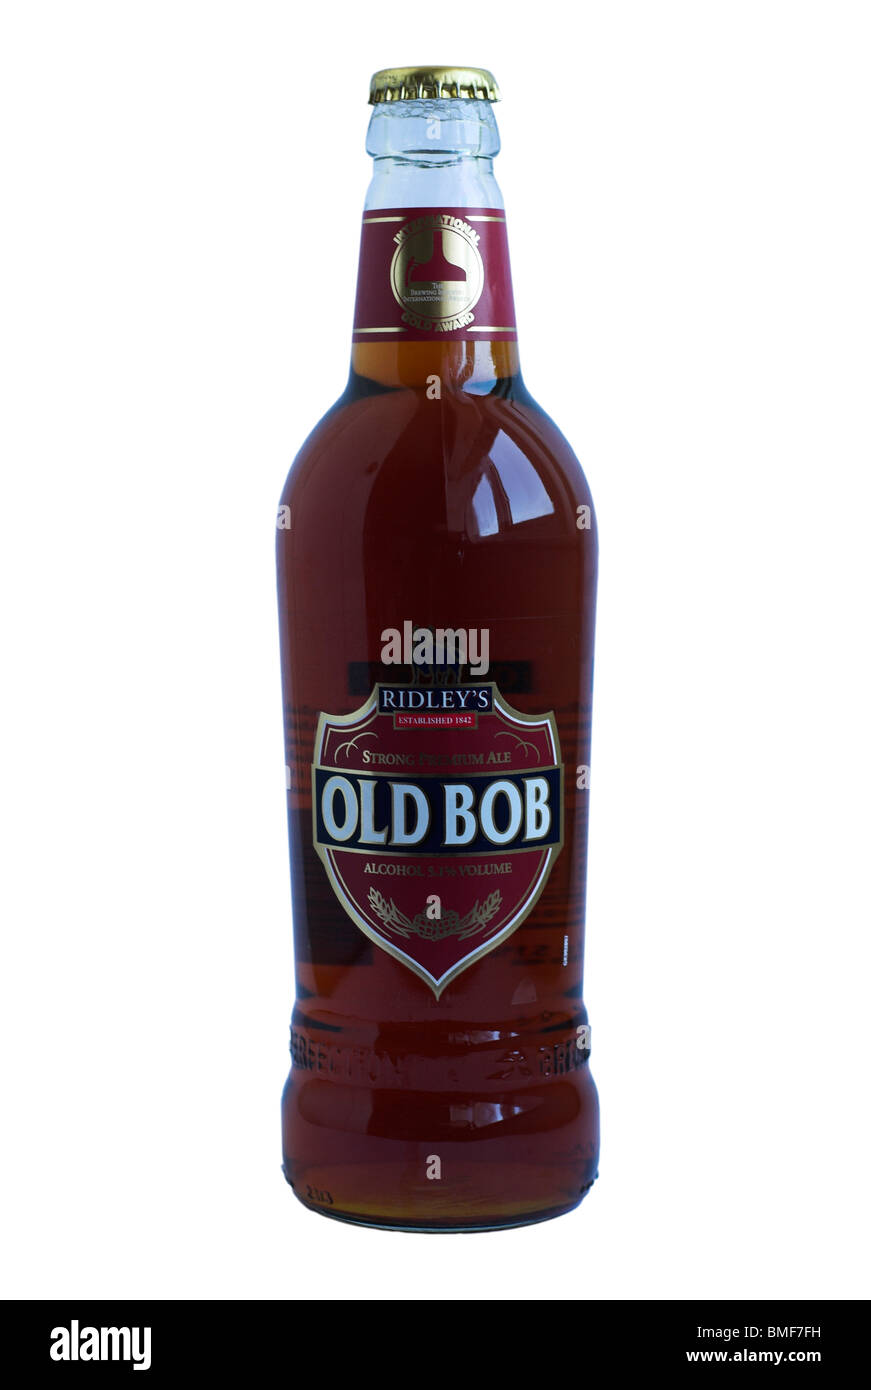 Greene King (Ridleys) Old Bob Bottled beer - 2010.  ABV 5.1%. Stock Photo